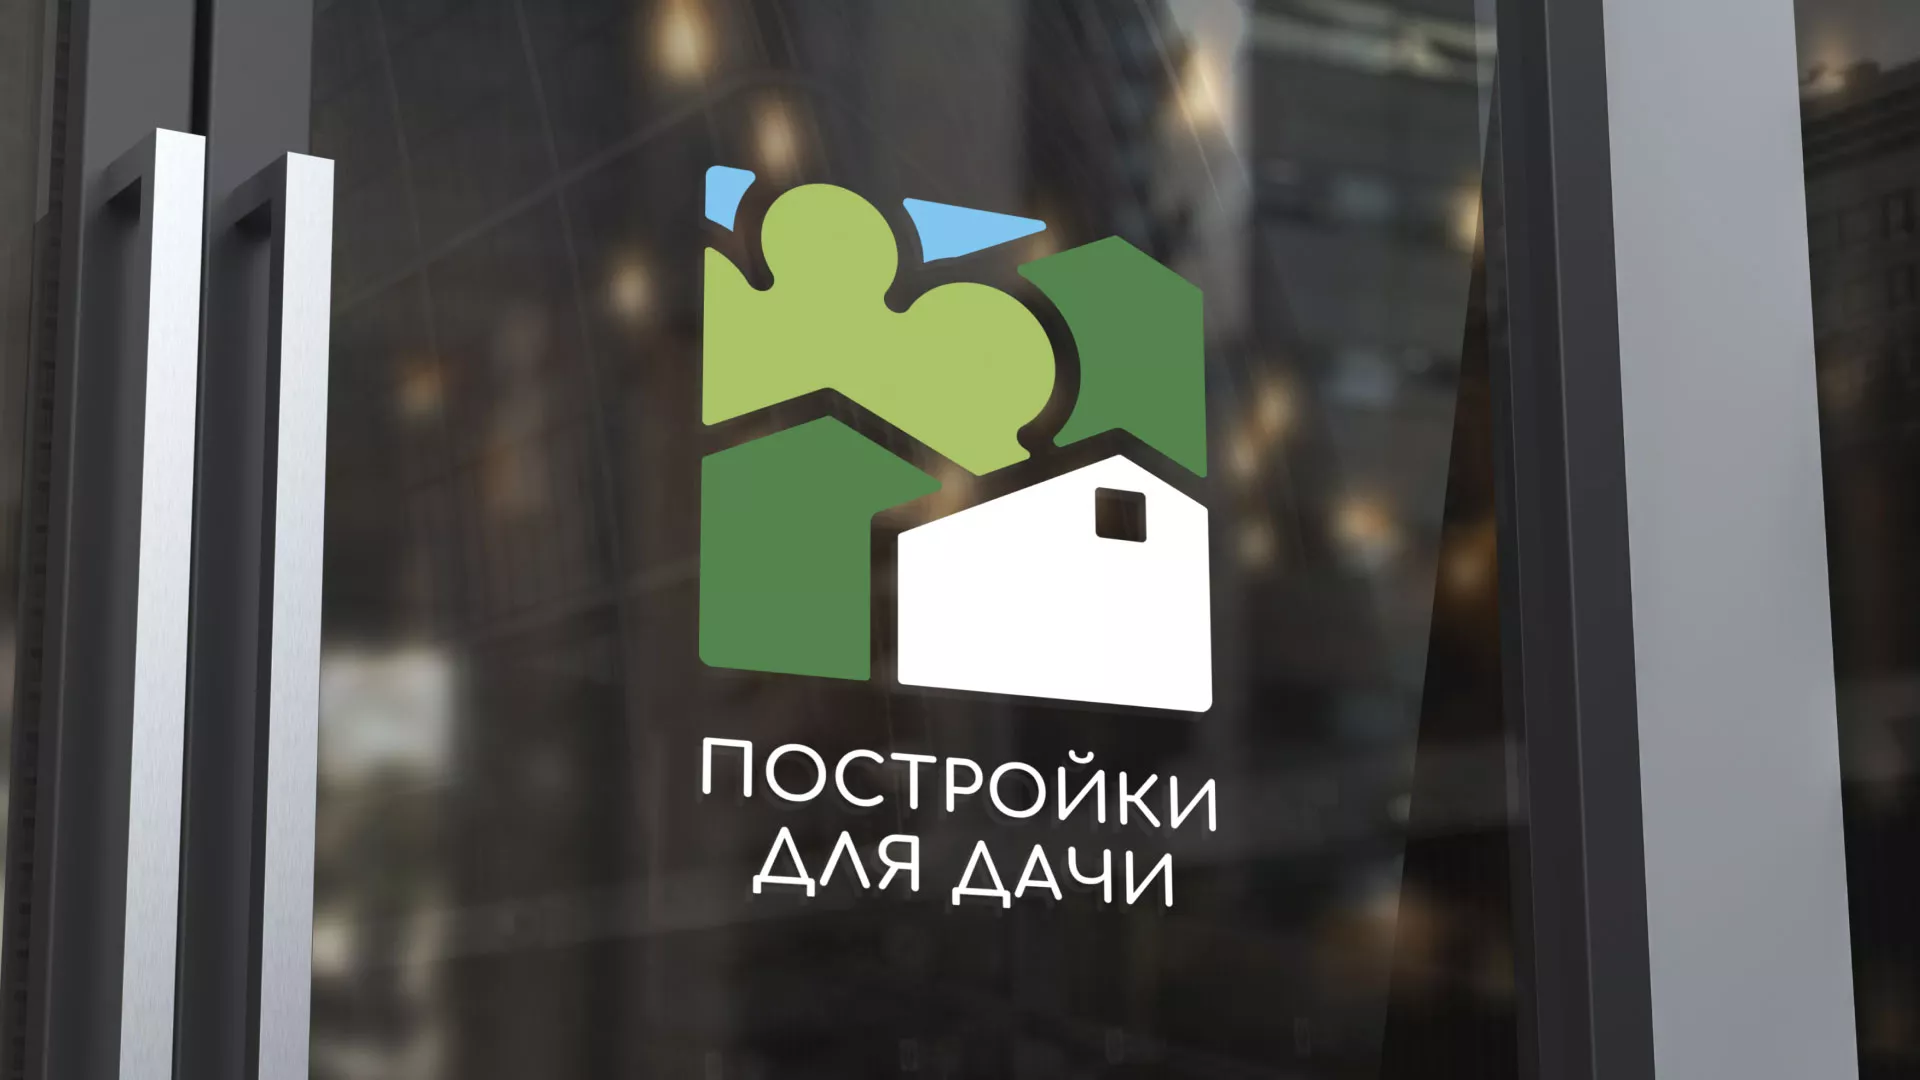 Разработка логотипа в Соколе для компании «Постройки для дачи»